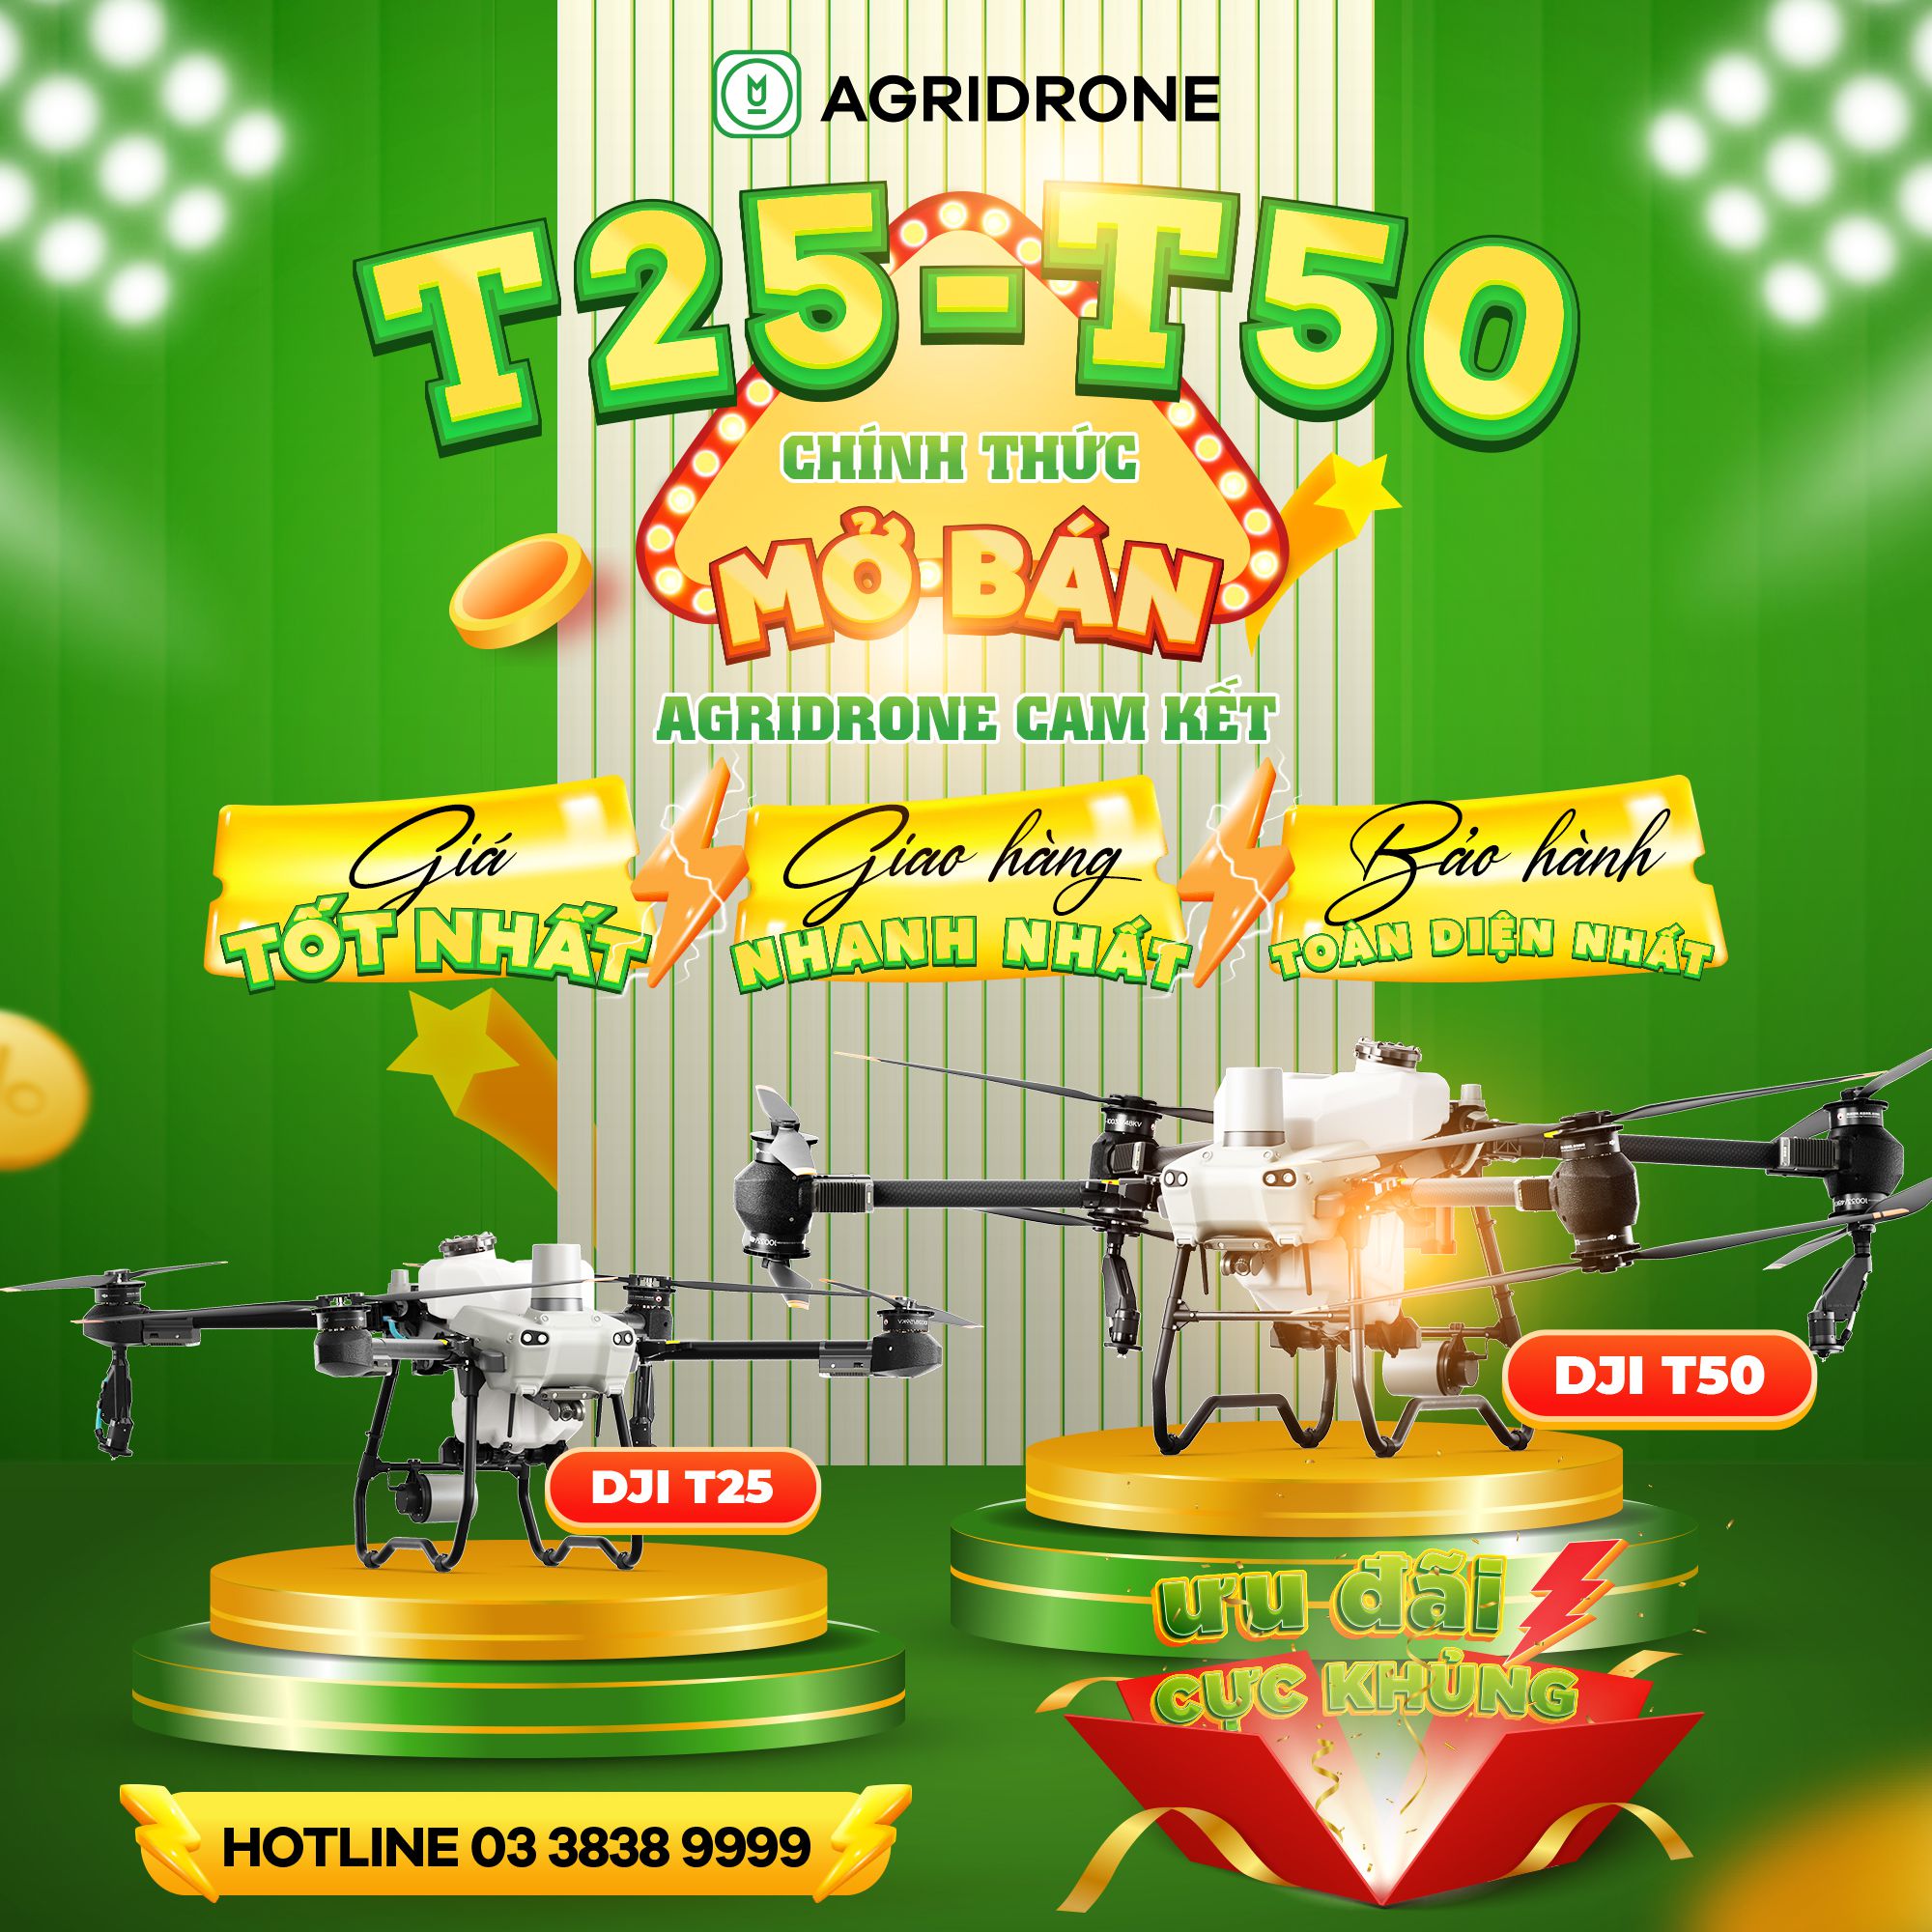 AgriDrone chính thức mở bán DJI T25 và DJI T50